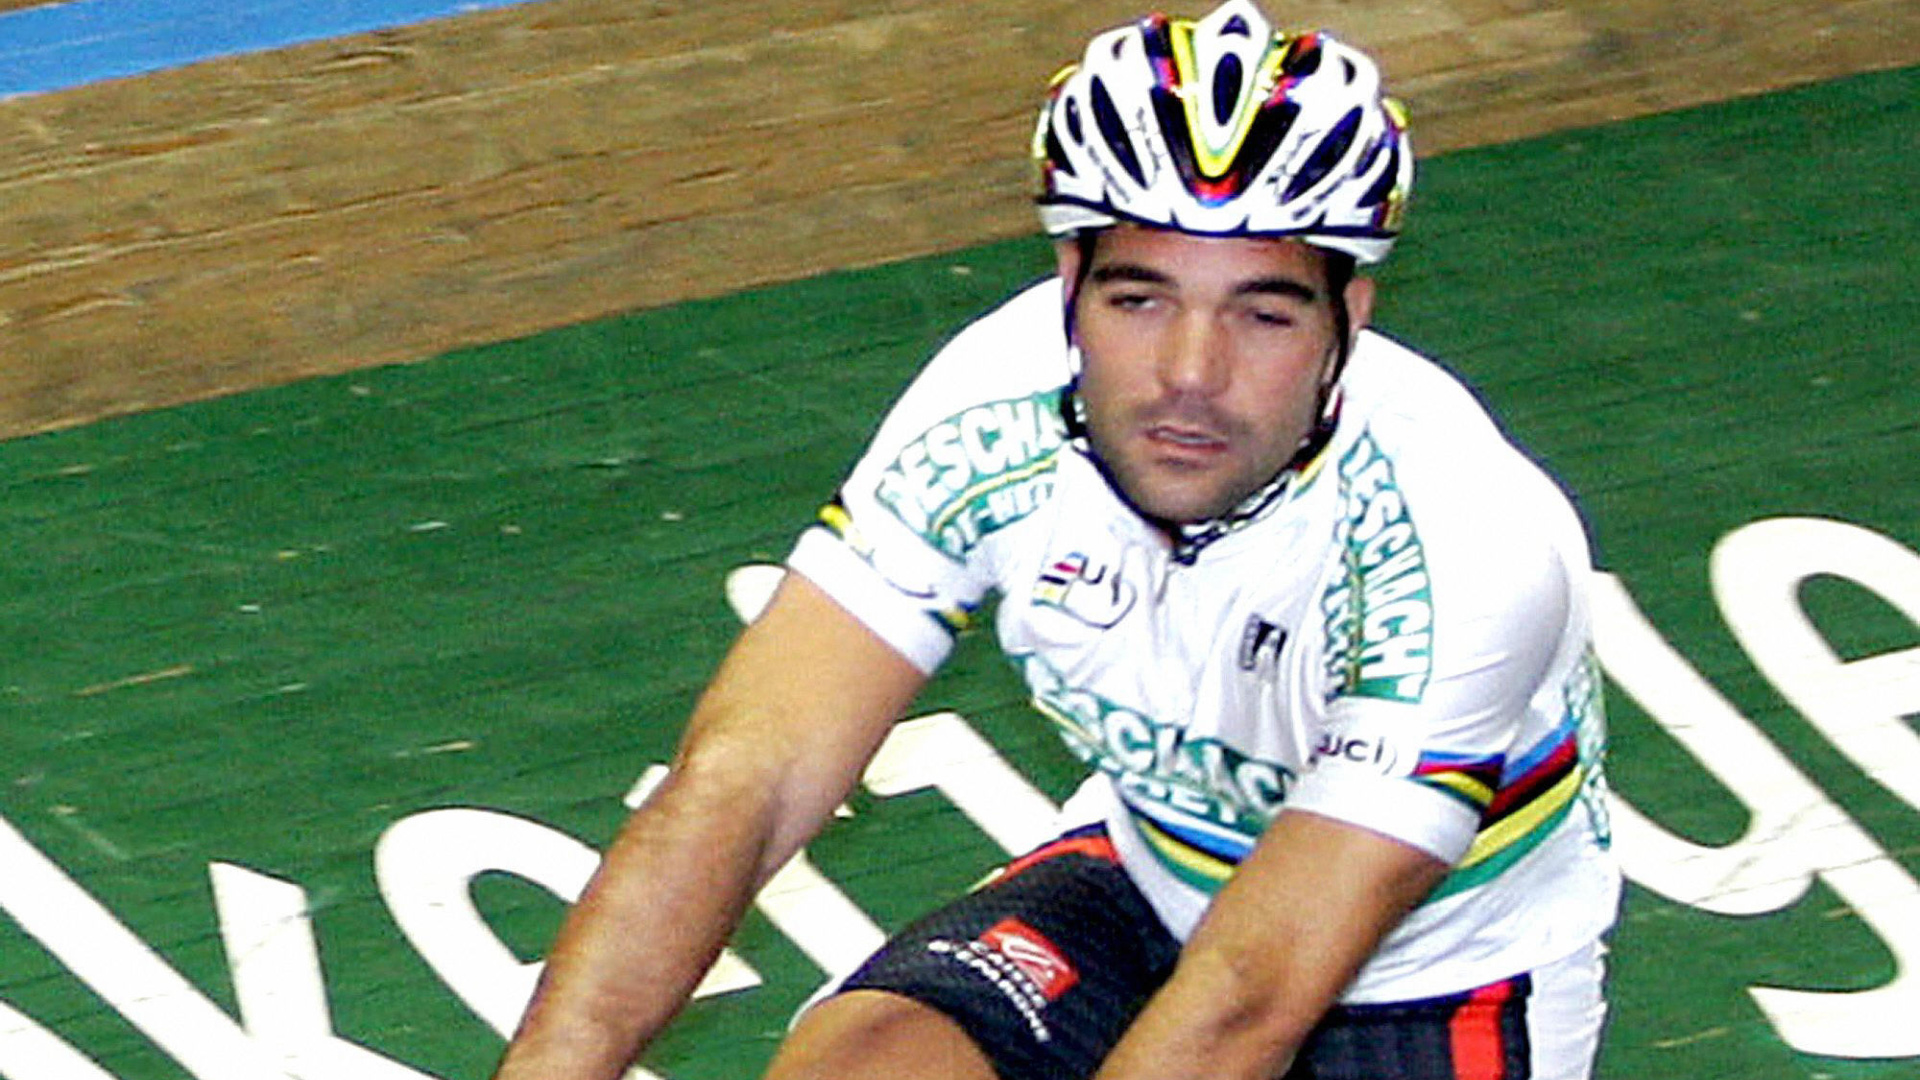 Assim foi o acidente que matou Isaac Gálvez López, campeão mundial de ciclismo